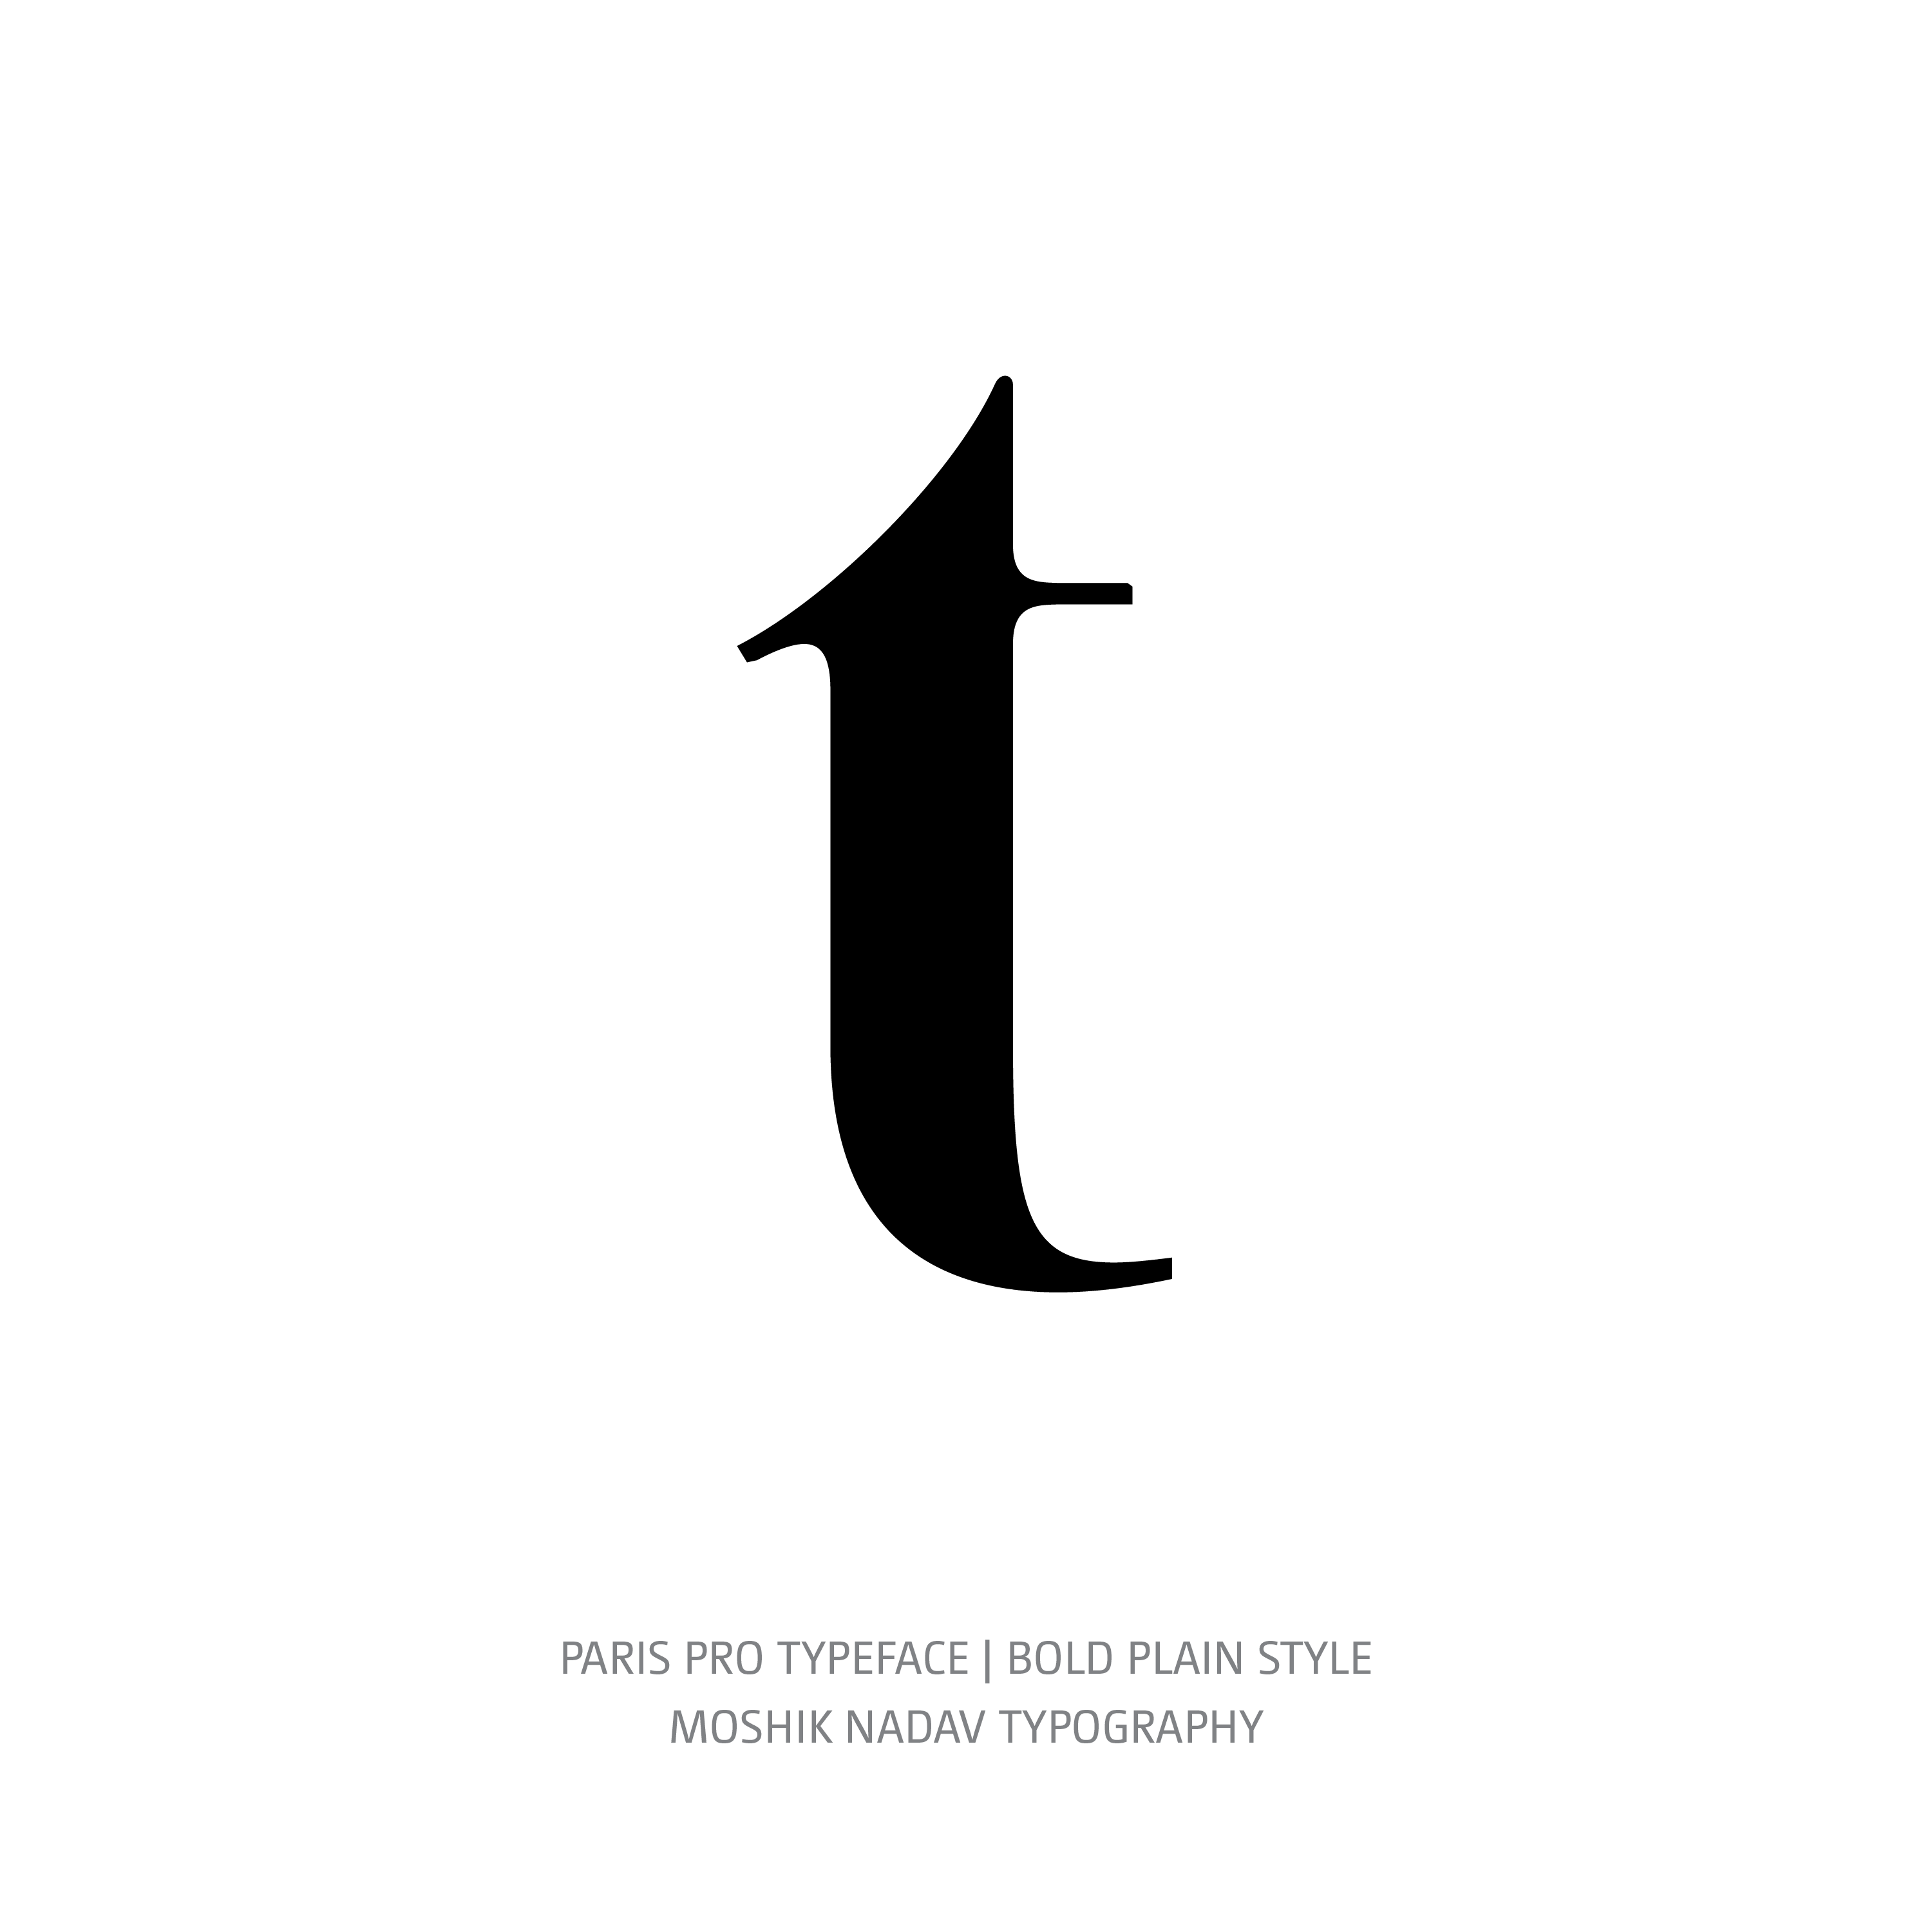 Paris Pro Typeface Bold Plain t